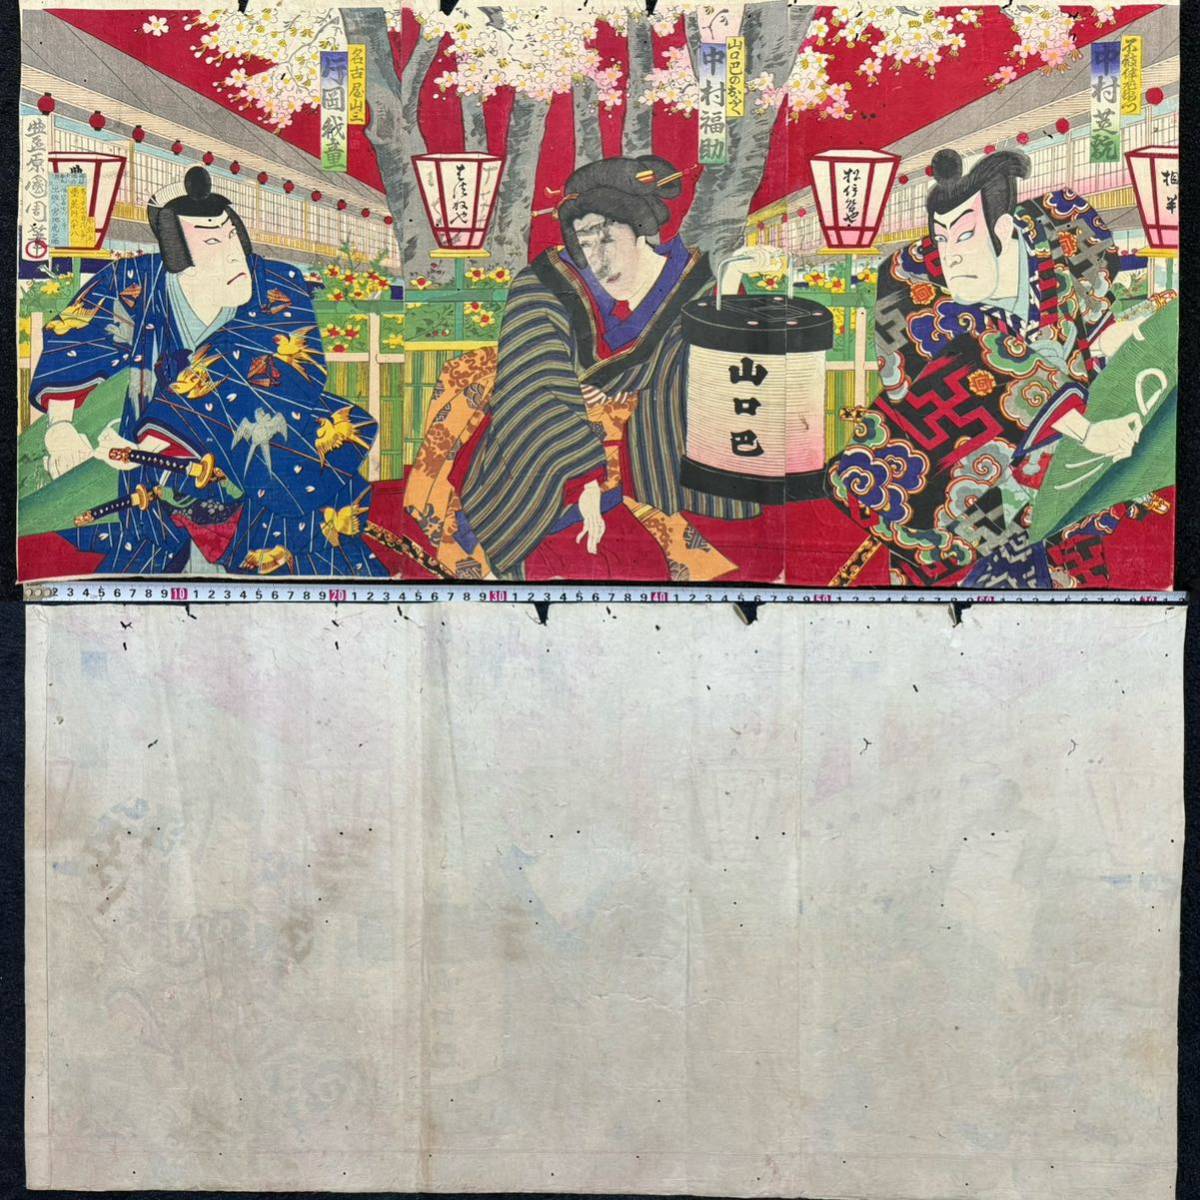 Meiji-Zeit/Authentische Arbeit von Toyohara Kunichika, echter Ukiyo-e-Holzschnitt, Kabuki-Bild, Schauspieler Bild, Theaterbild, Nishiki-e, Triptychon, unterstützt, Malerei, Ukiyo-e, Drucke, Kabuki-Malerei, Schauspieler Gemälde